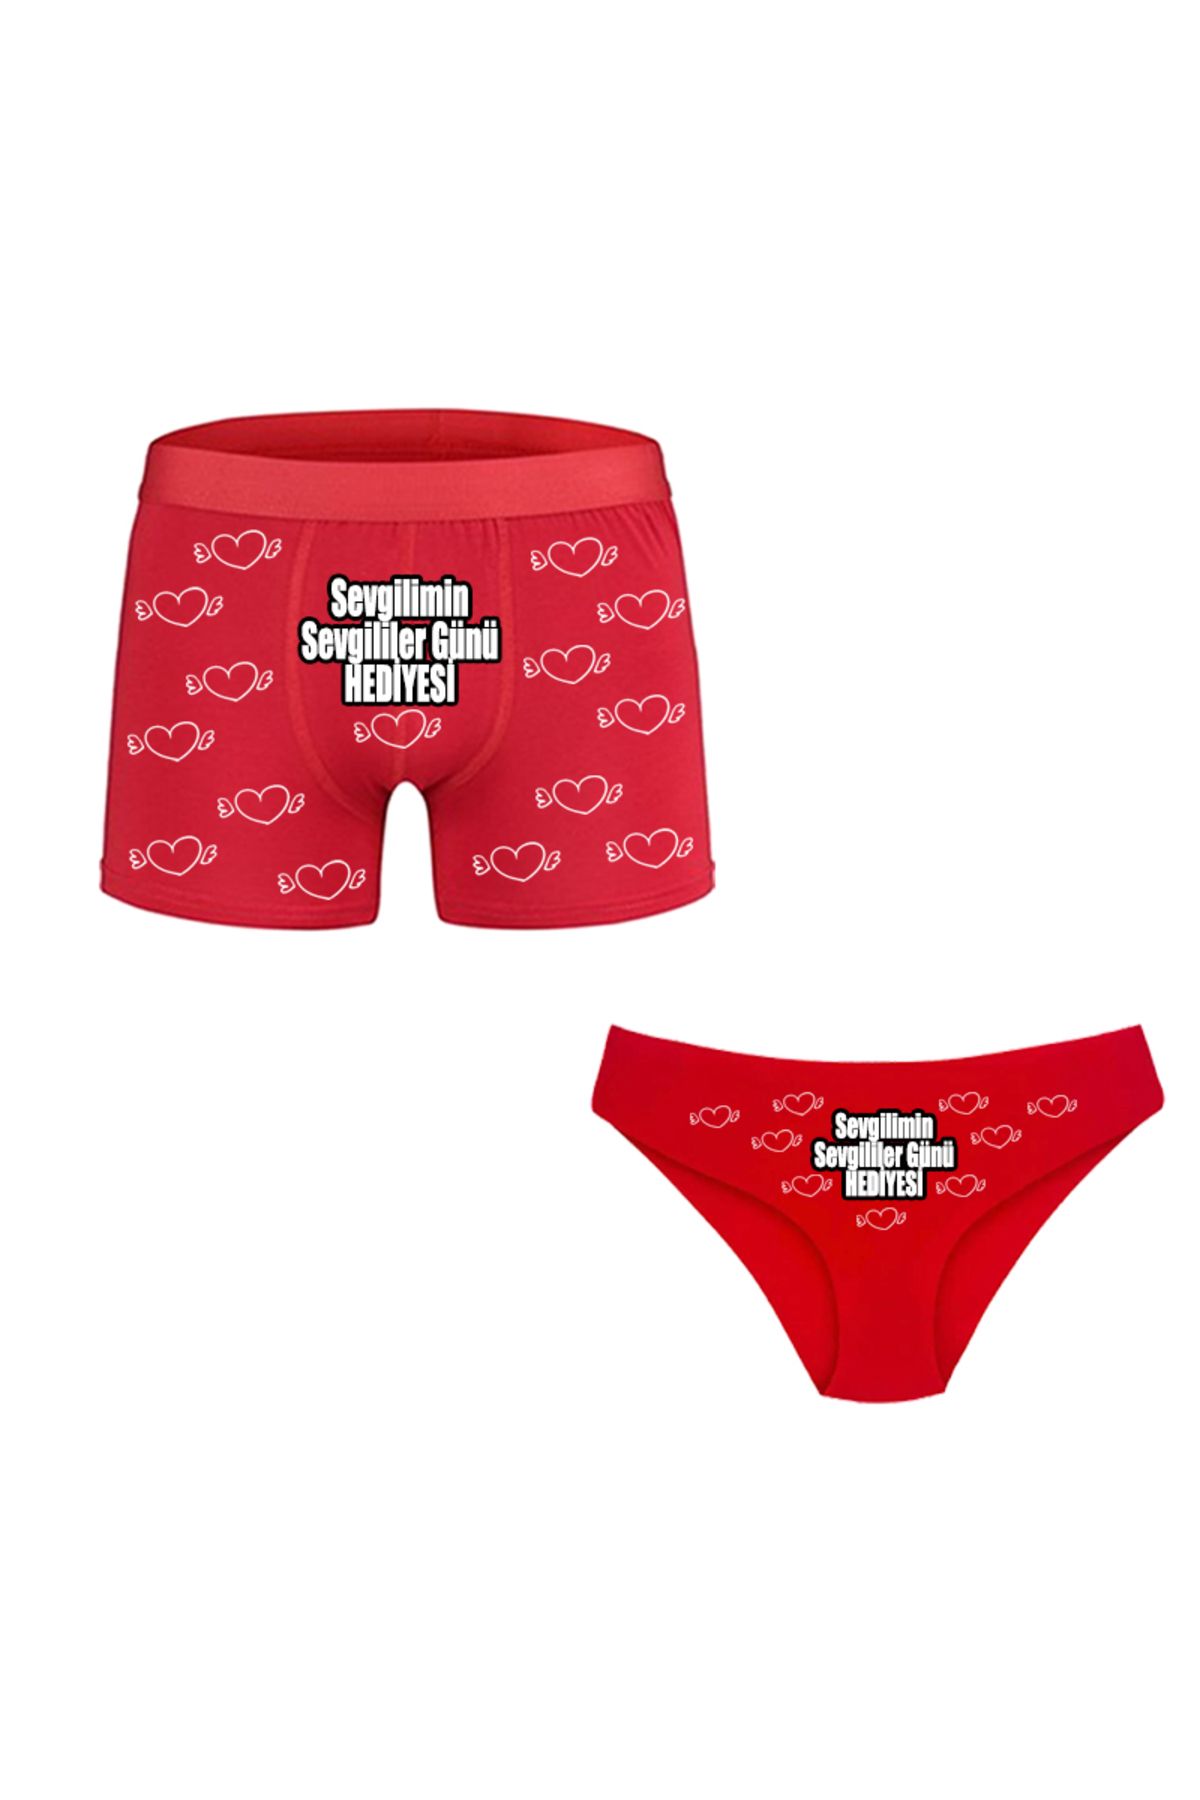 HediyeMania Çiftlere Özel Sevgililer Günü Hediyesi Kırmızı Erkek Boxer Kalpli Kadın Külot İç Çamaşırı Kombini